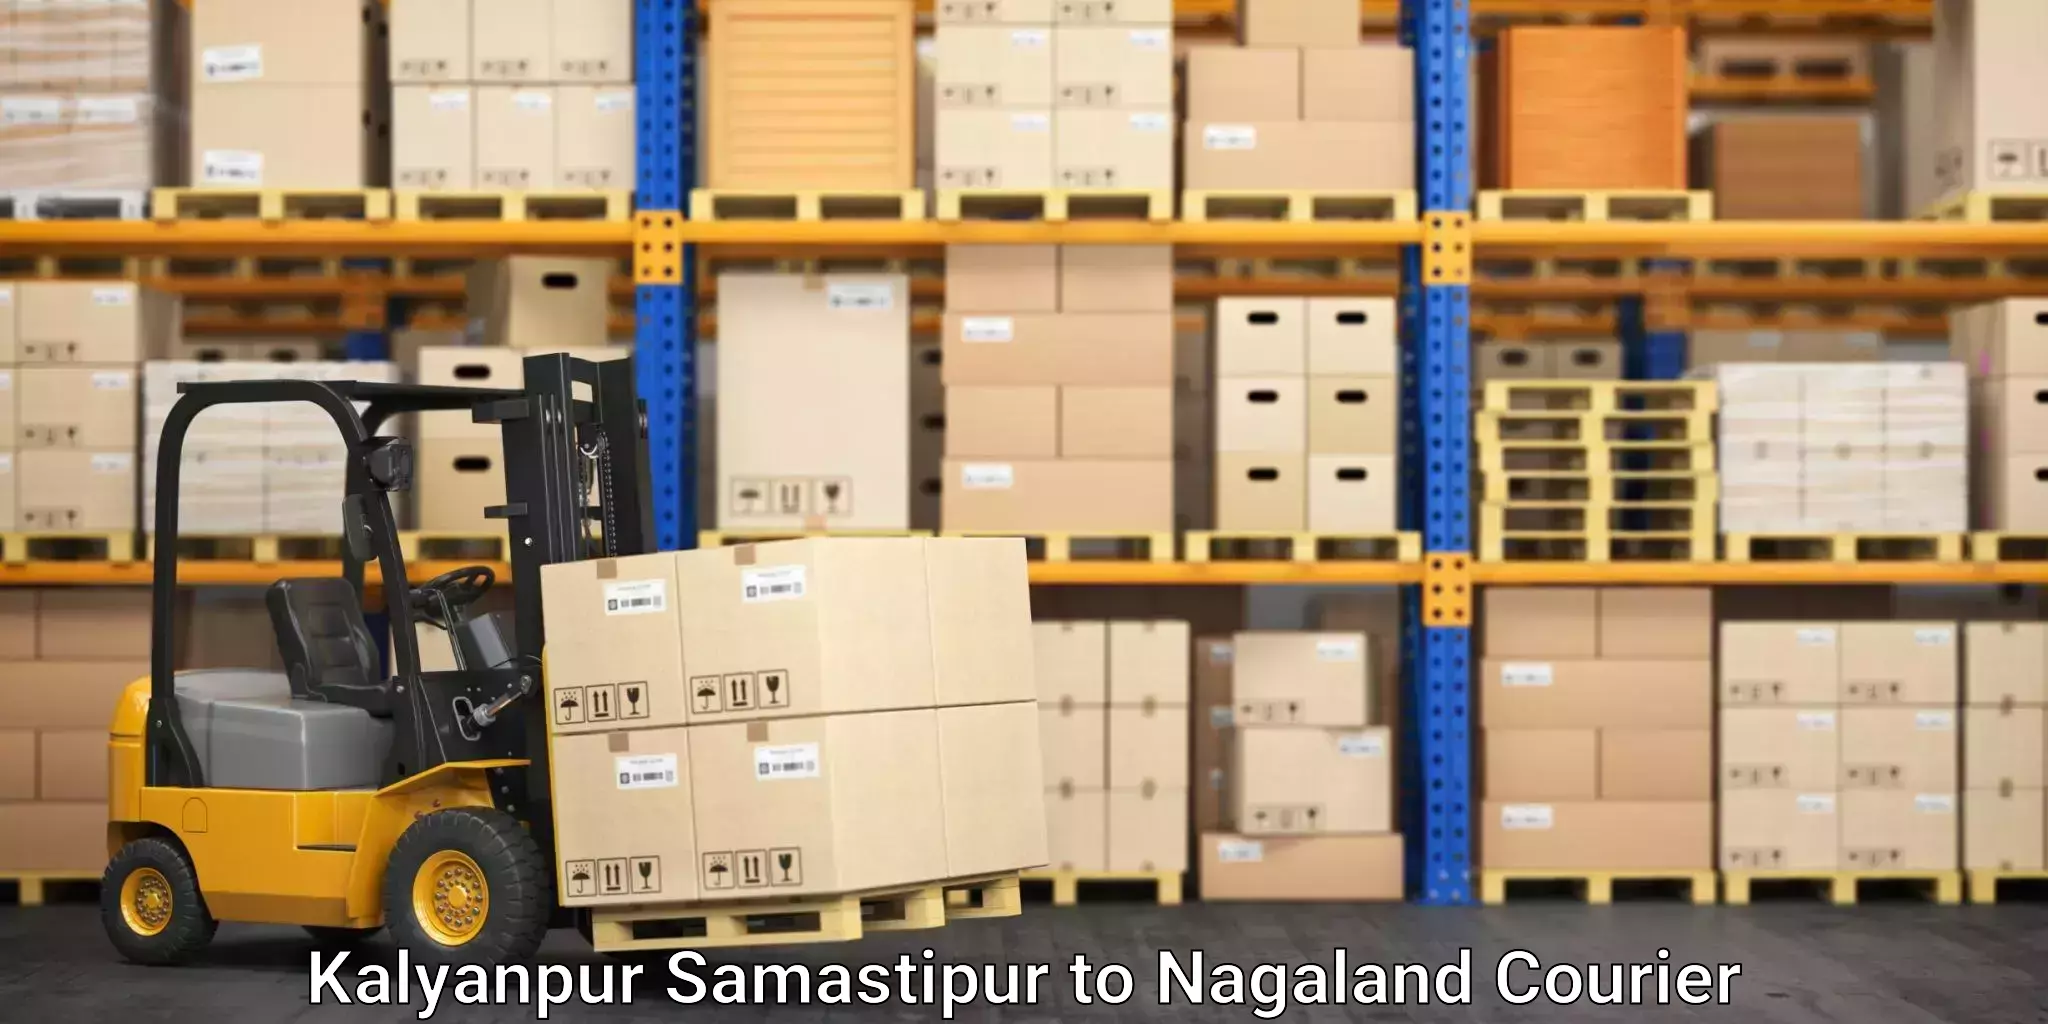 Home moving experts Kalyanpur Samastipur to Nagaland